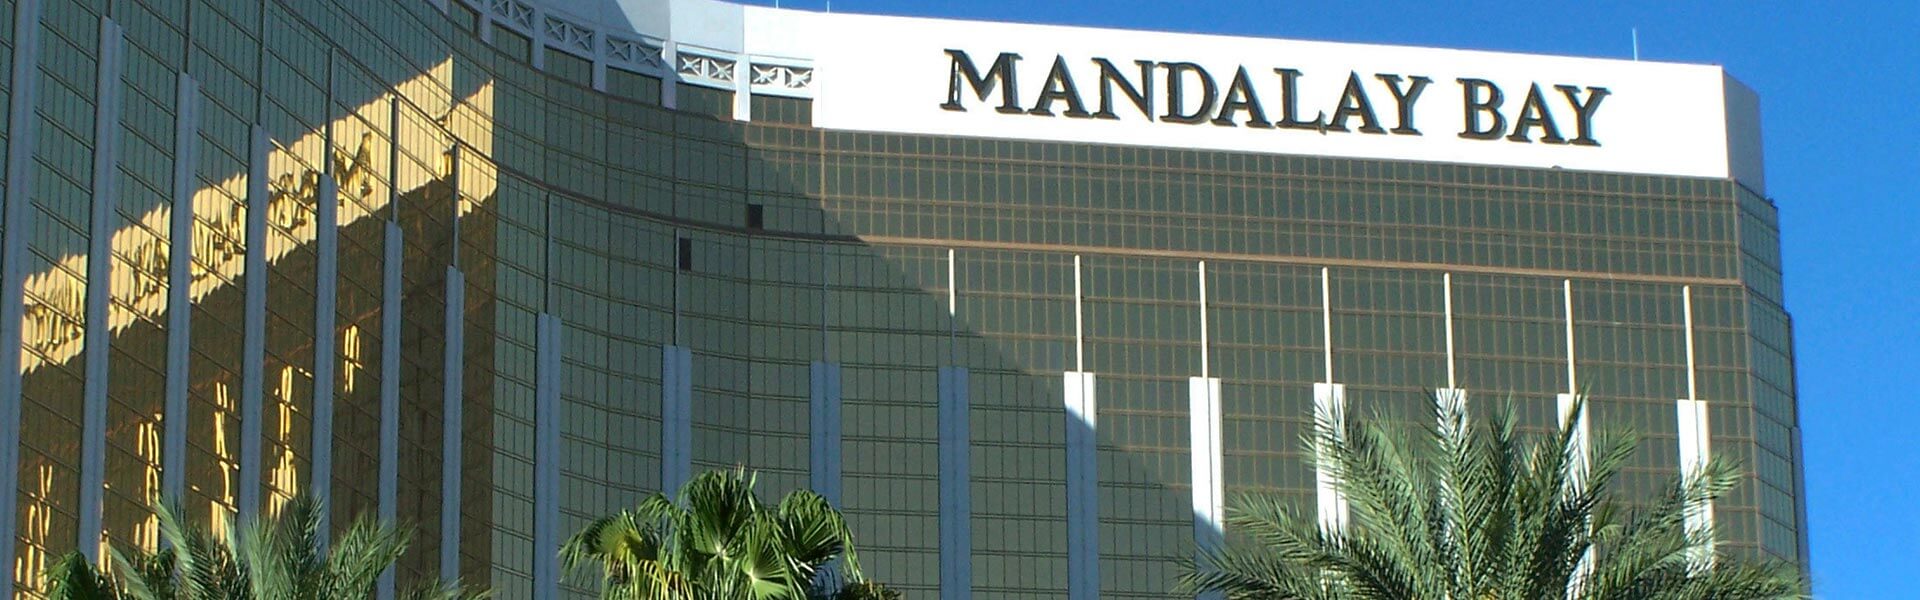 My Stay at Las Vegas Mandalay Bay Hotel